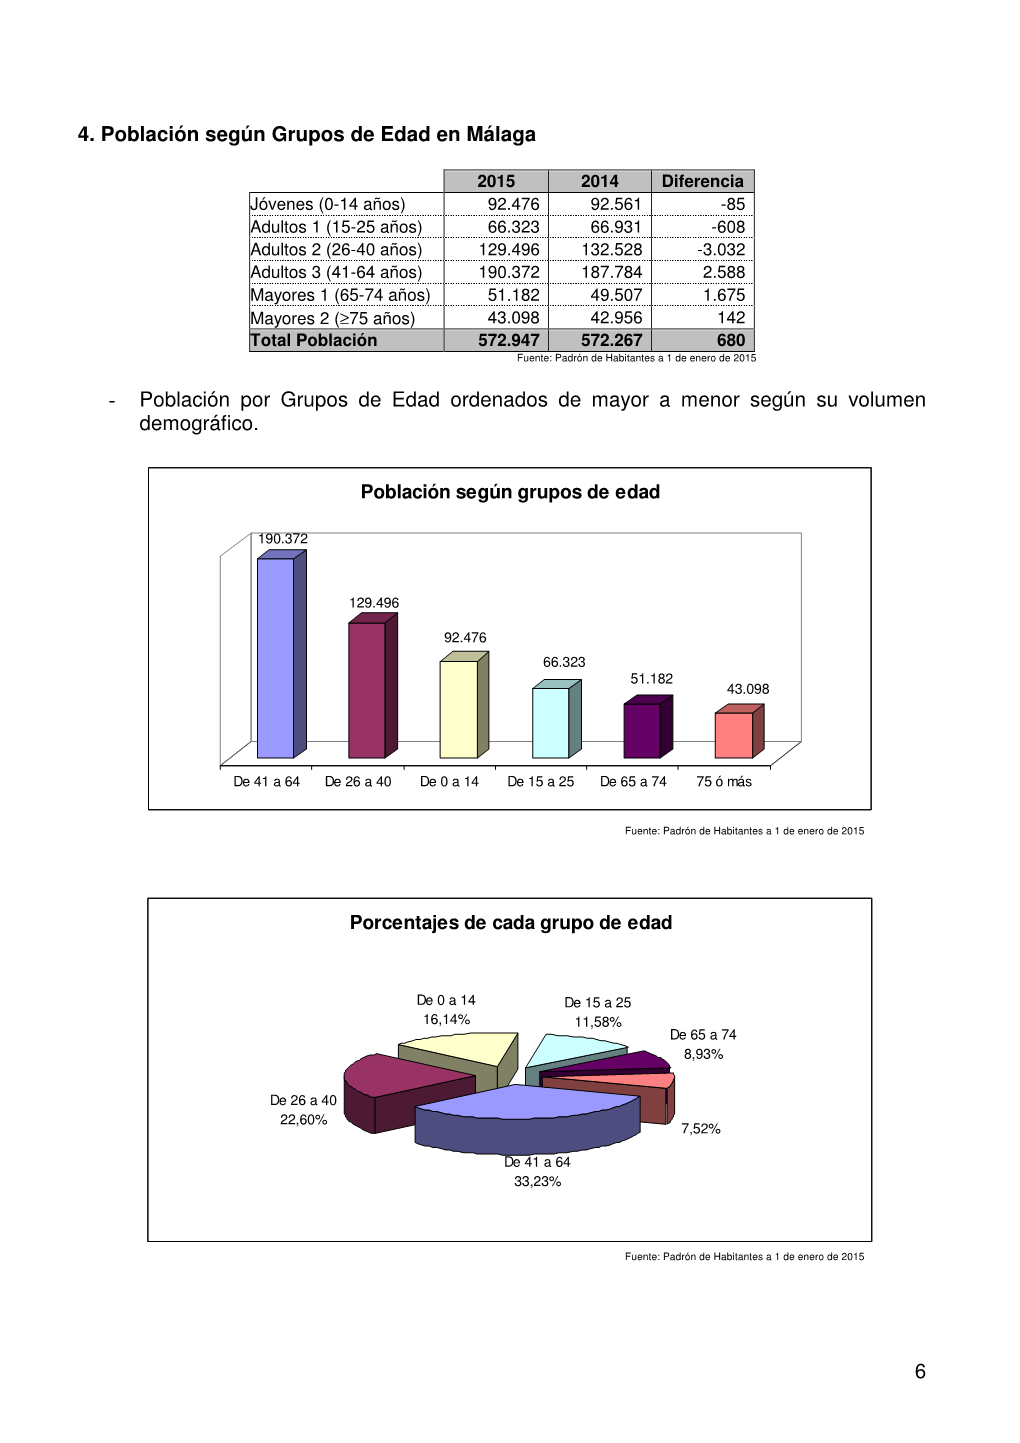 Población Por Grupos De Edad Ordenados De Mayor a Menor Según Su Volumen Demográfico